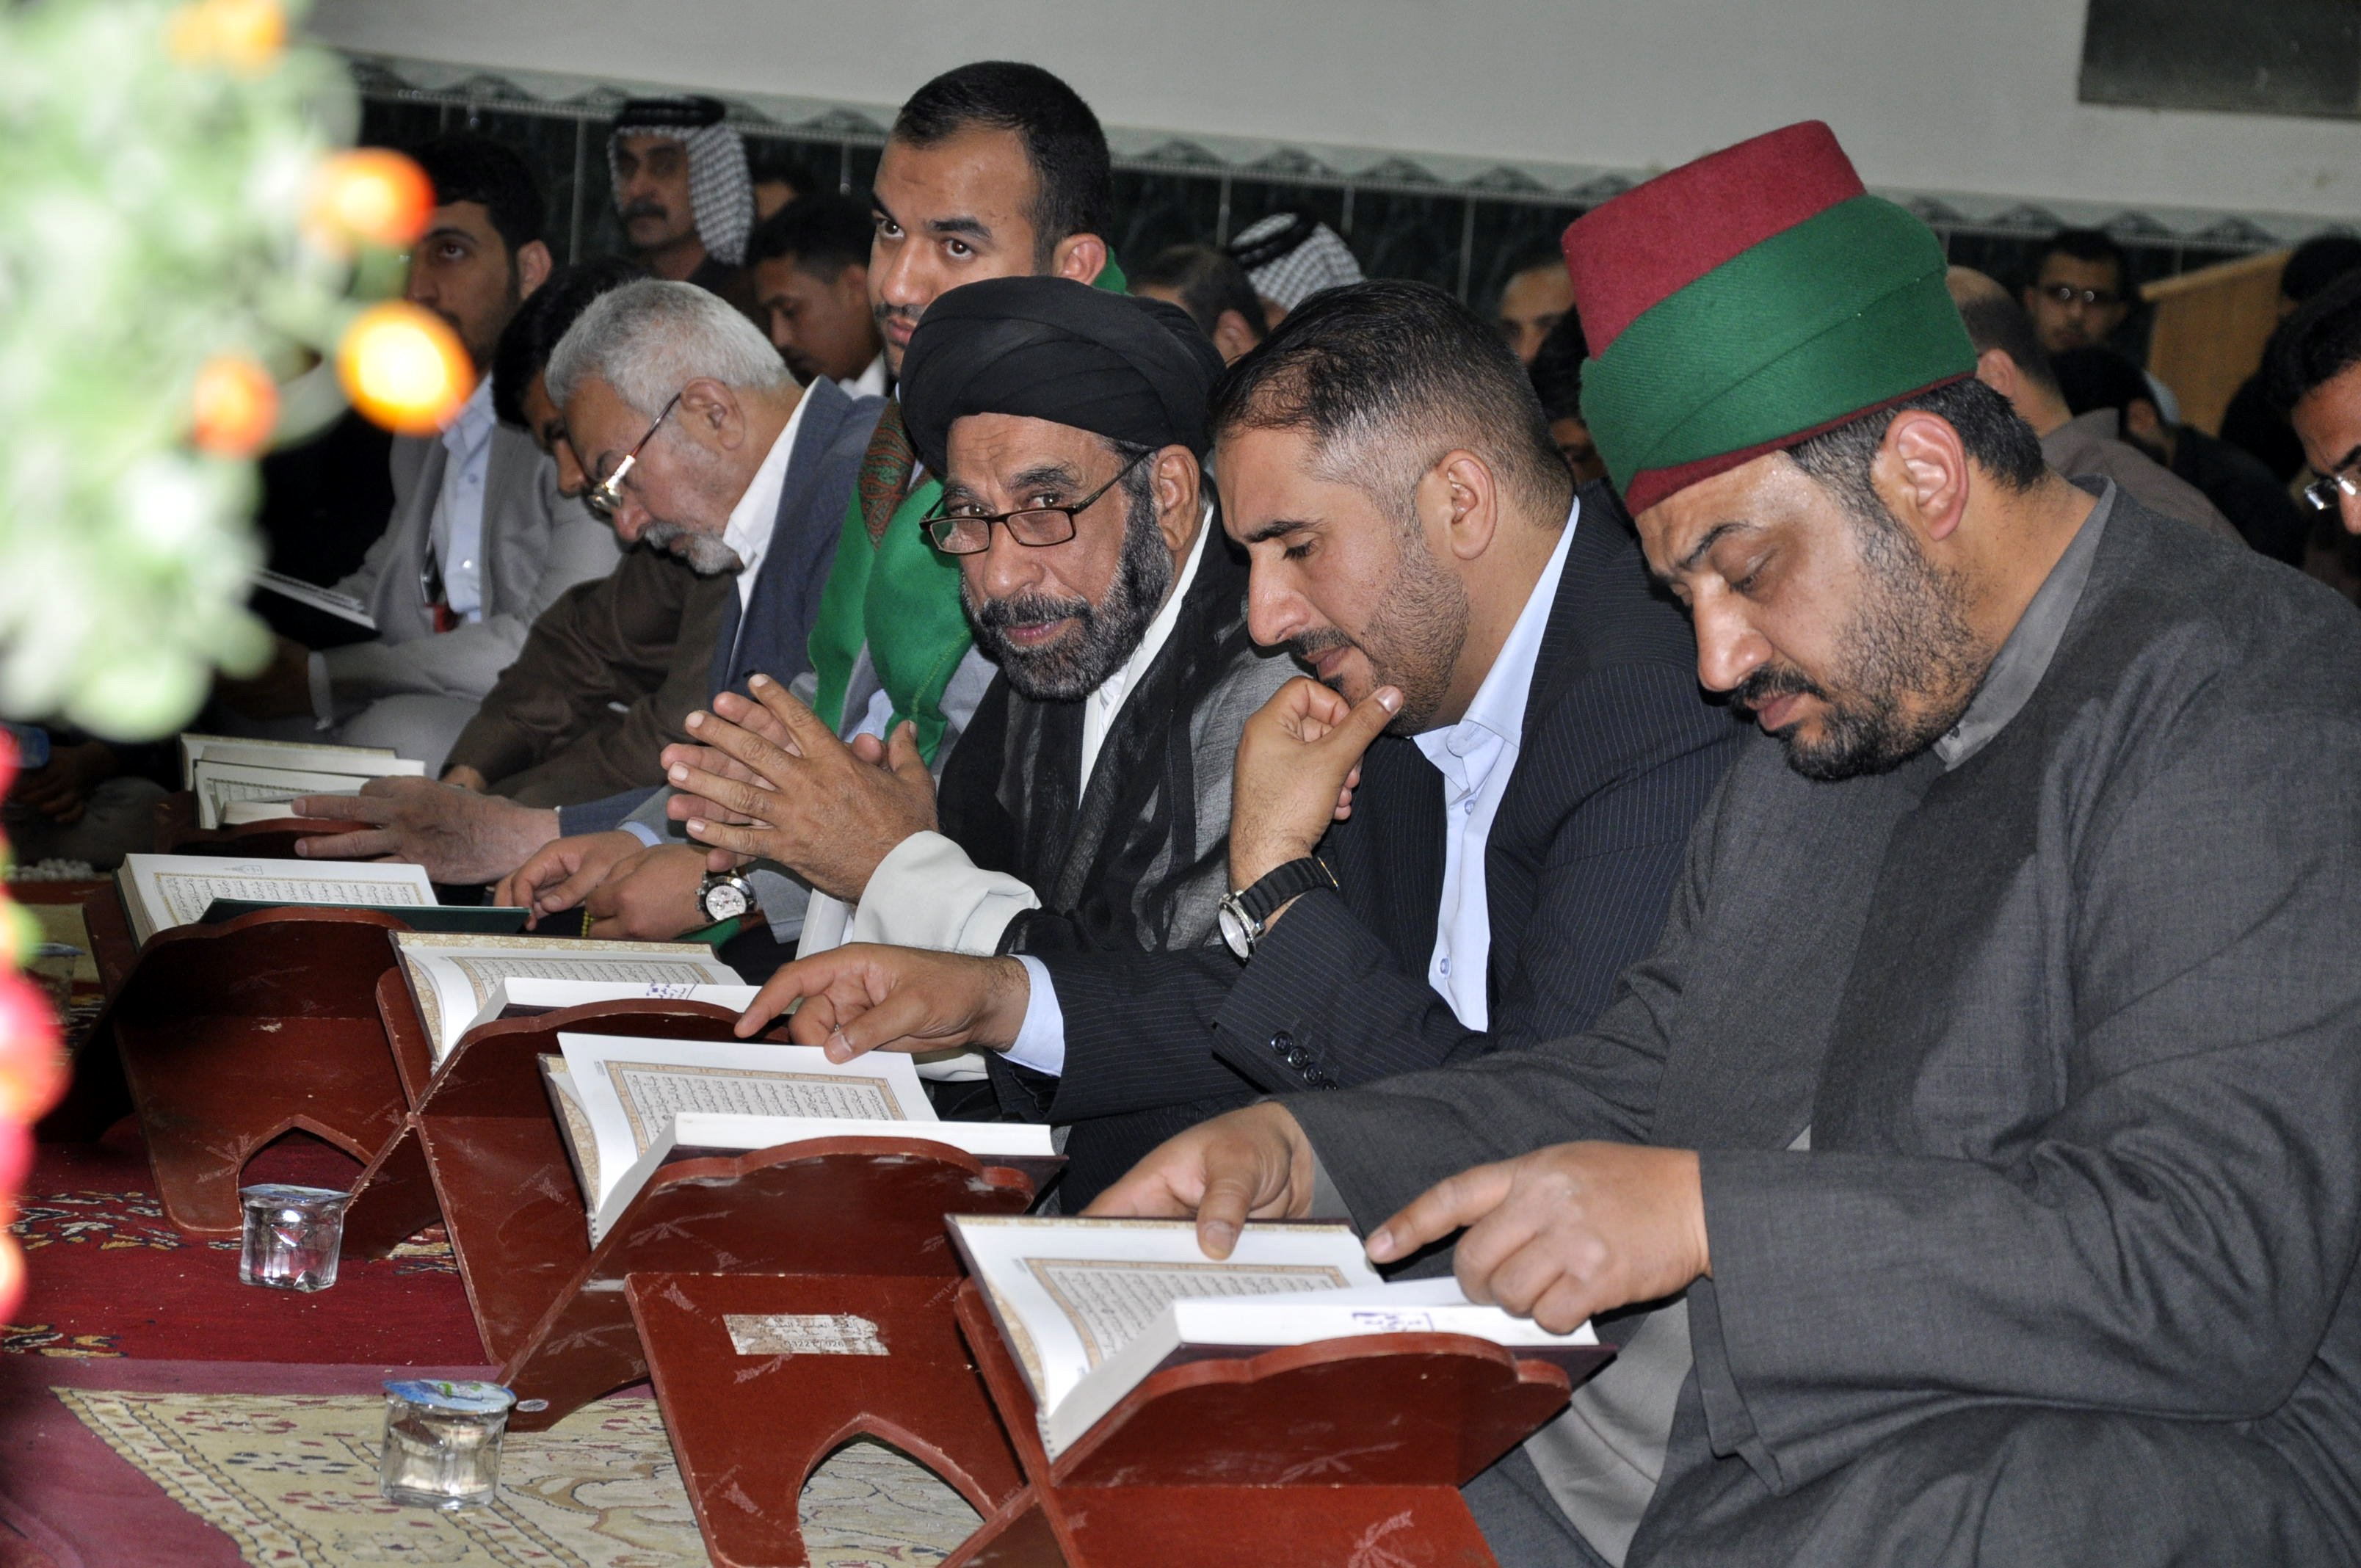 بحضور مميز معهد القرآن الكريم  يبث عبق الكتاب العزيز في قضاء الشامية بمحافظة الديوانية